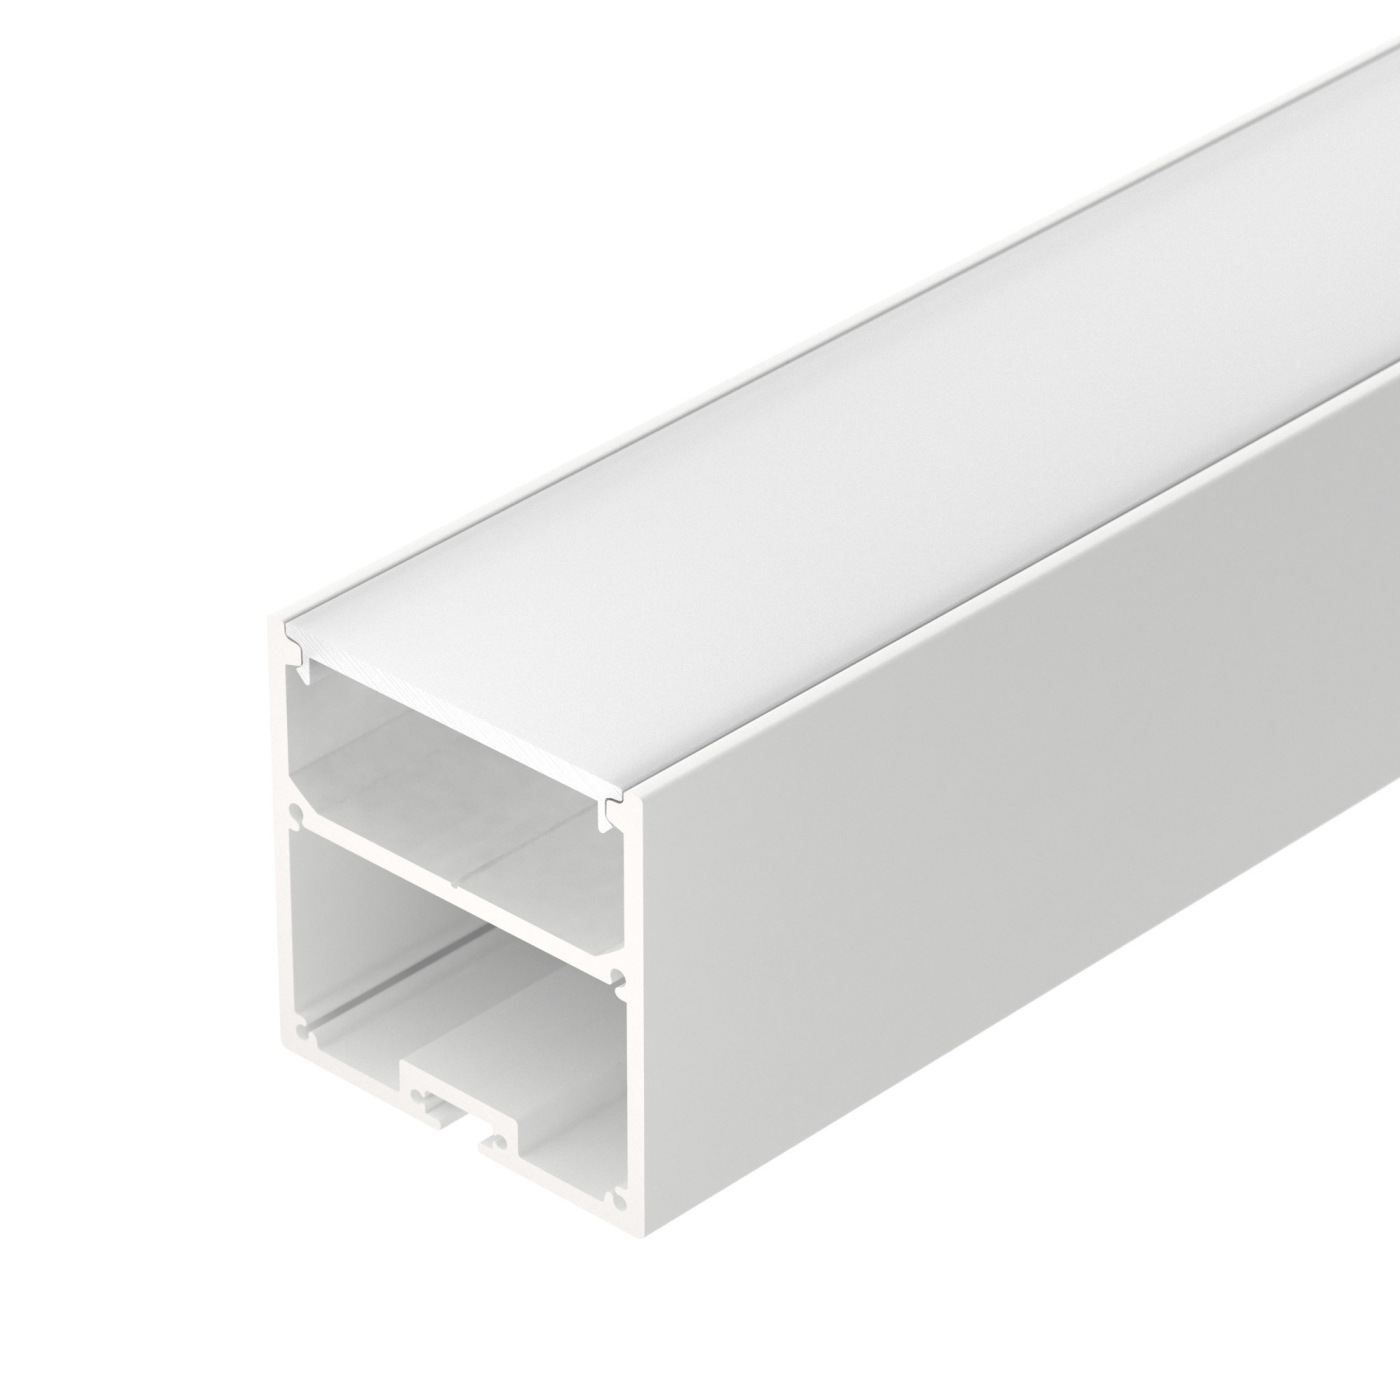 Профиль с экраном SL-LINE-5050-2500 WHITE+OPAL профиль алюминиевый накладной подвесной с отсеком для бп серебро cab267